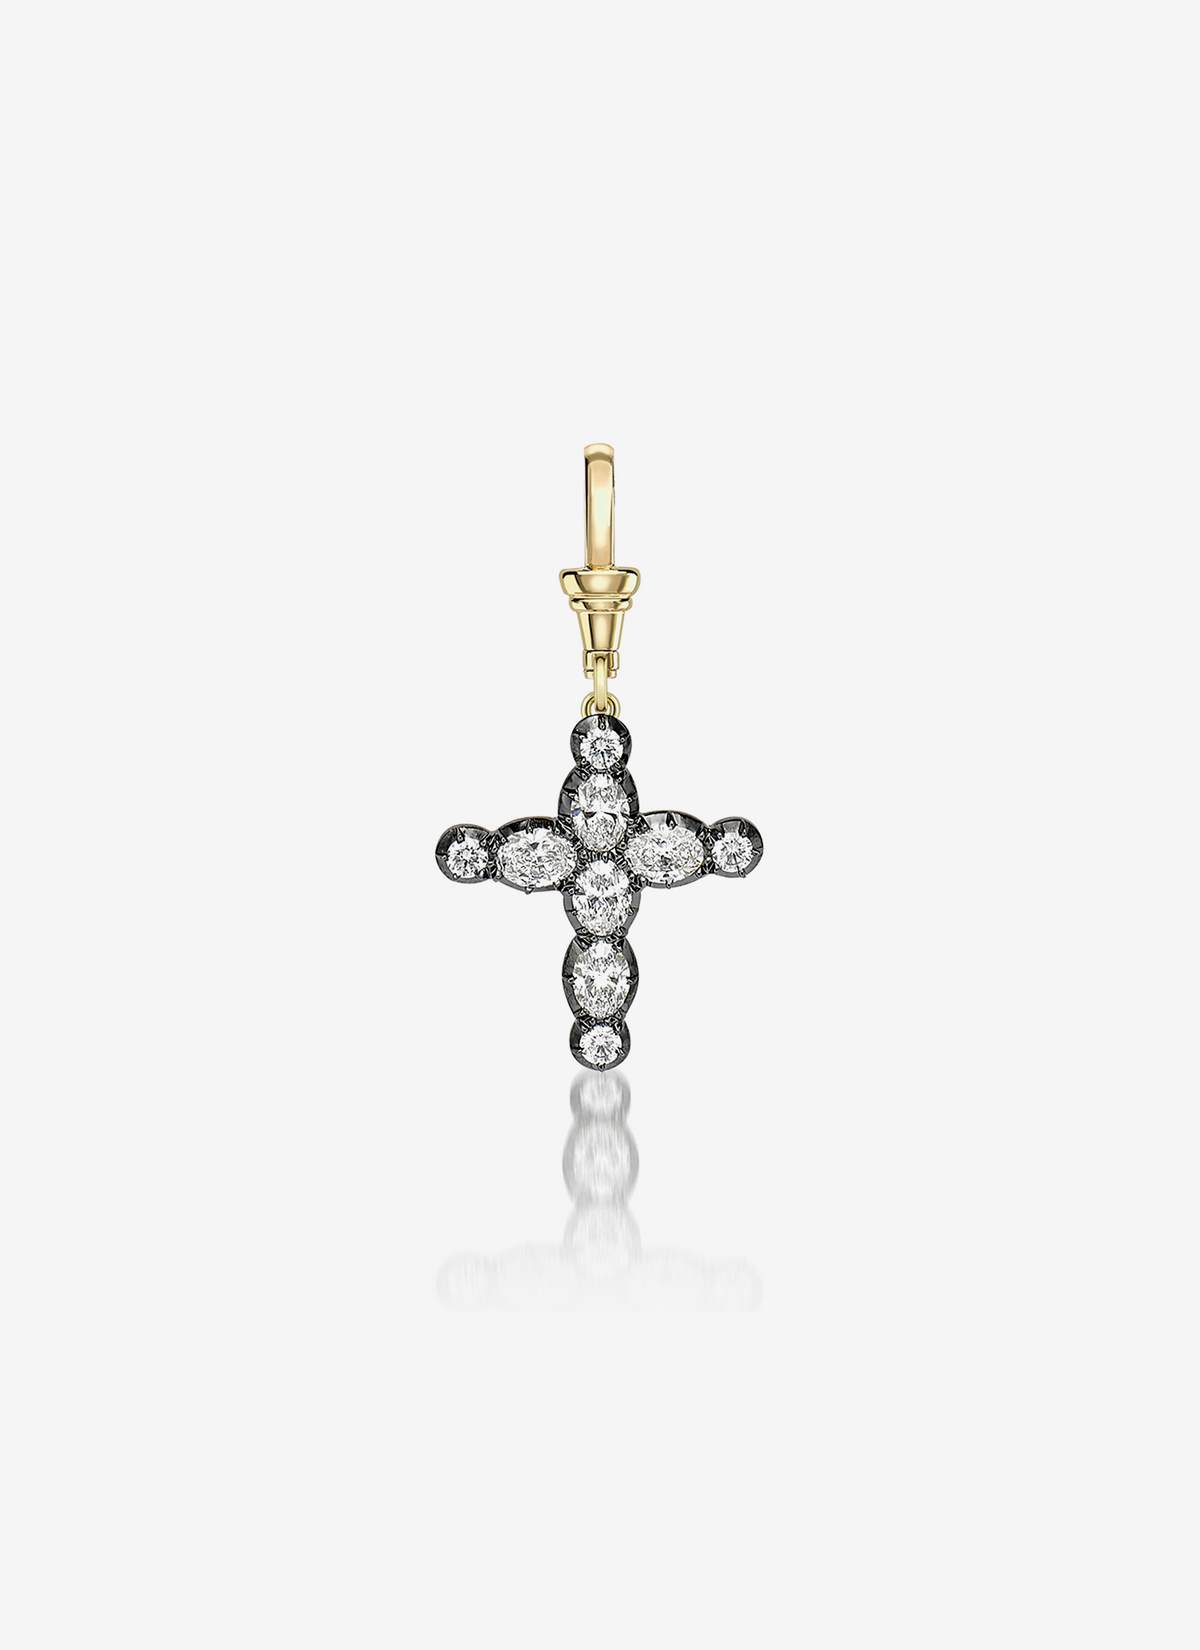 Oval Diamond Cross Pendant